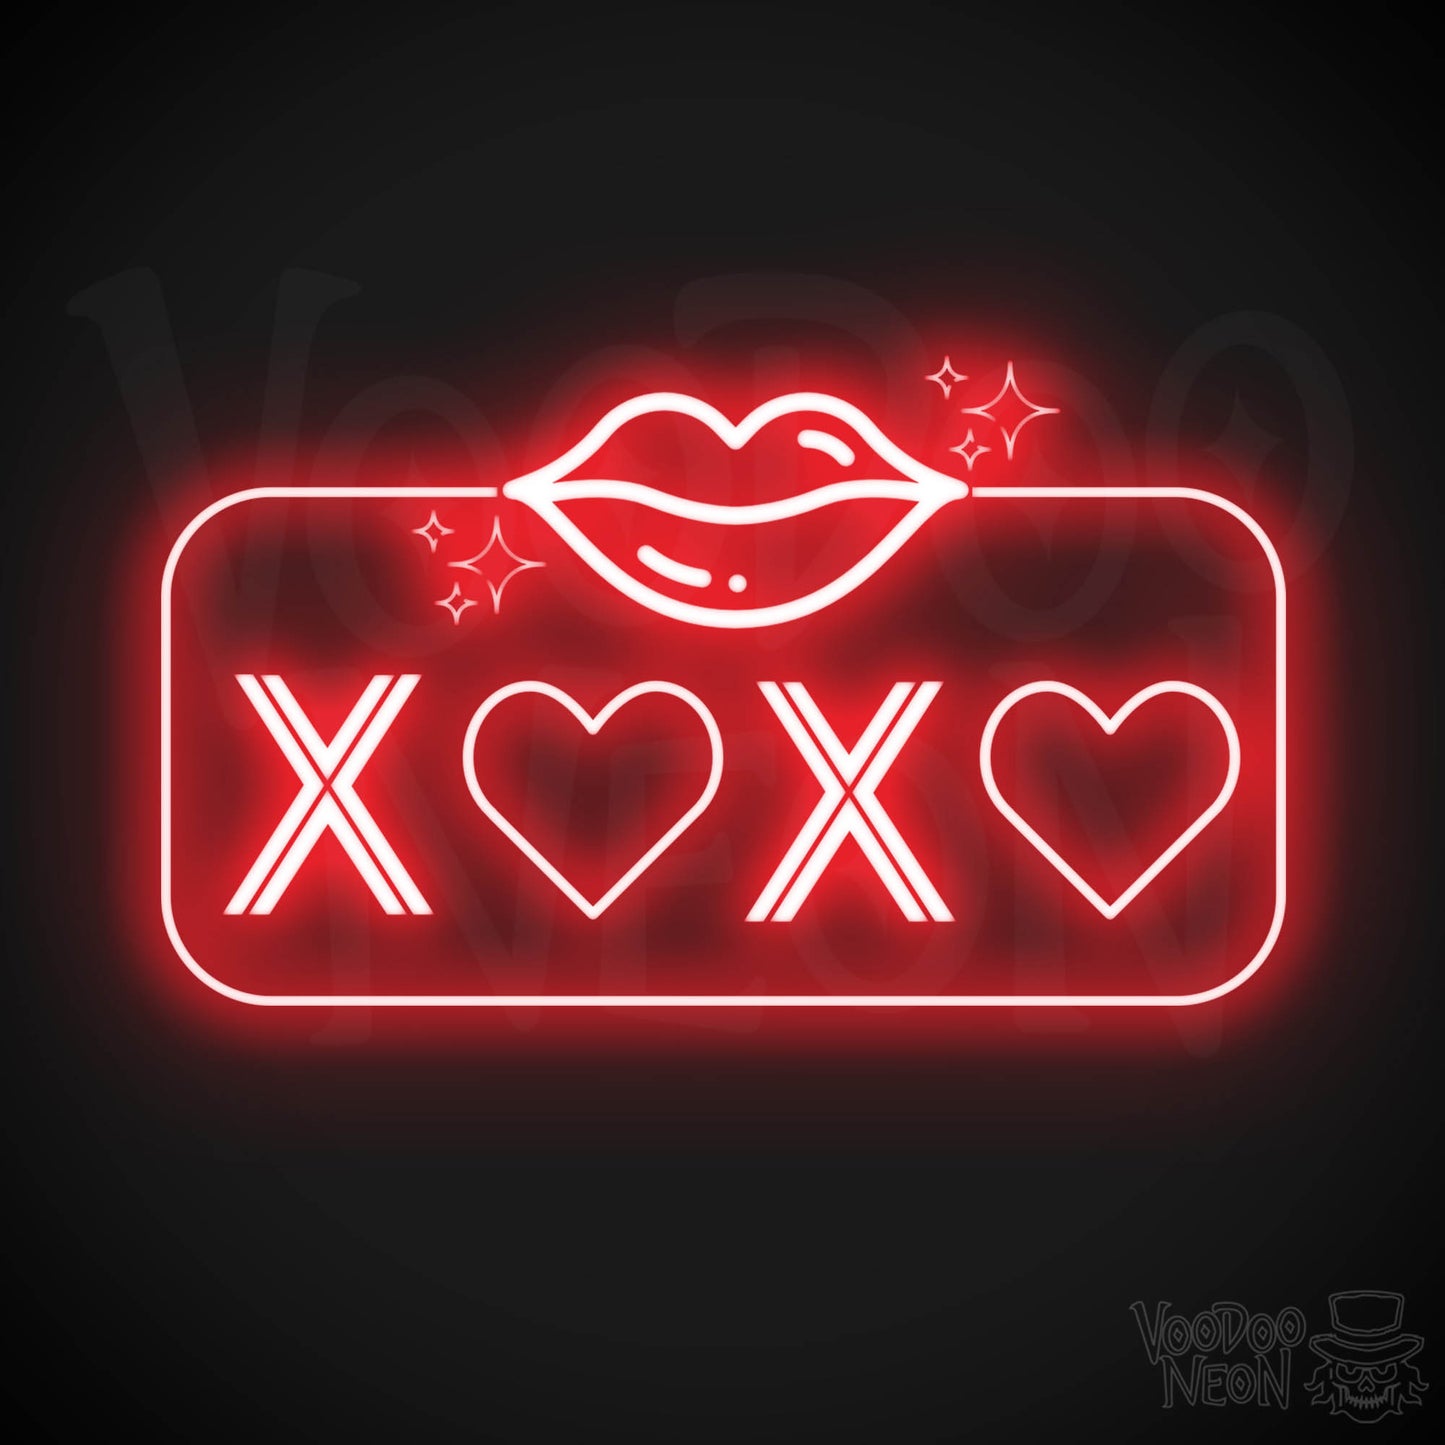 Xoxo Neon Sign - Neon XOXO - Kiss Hug Neon Wall Art - Color Red